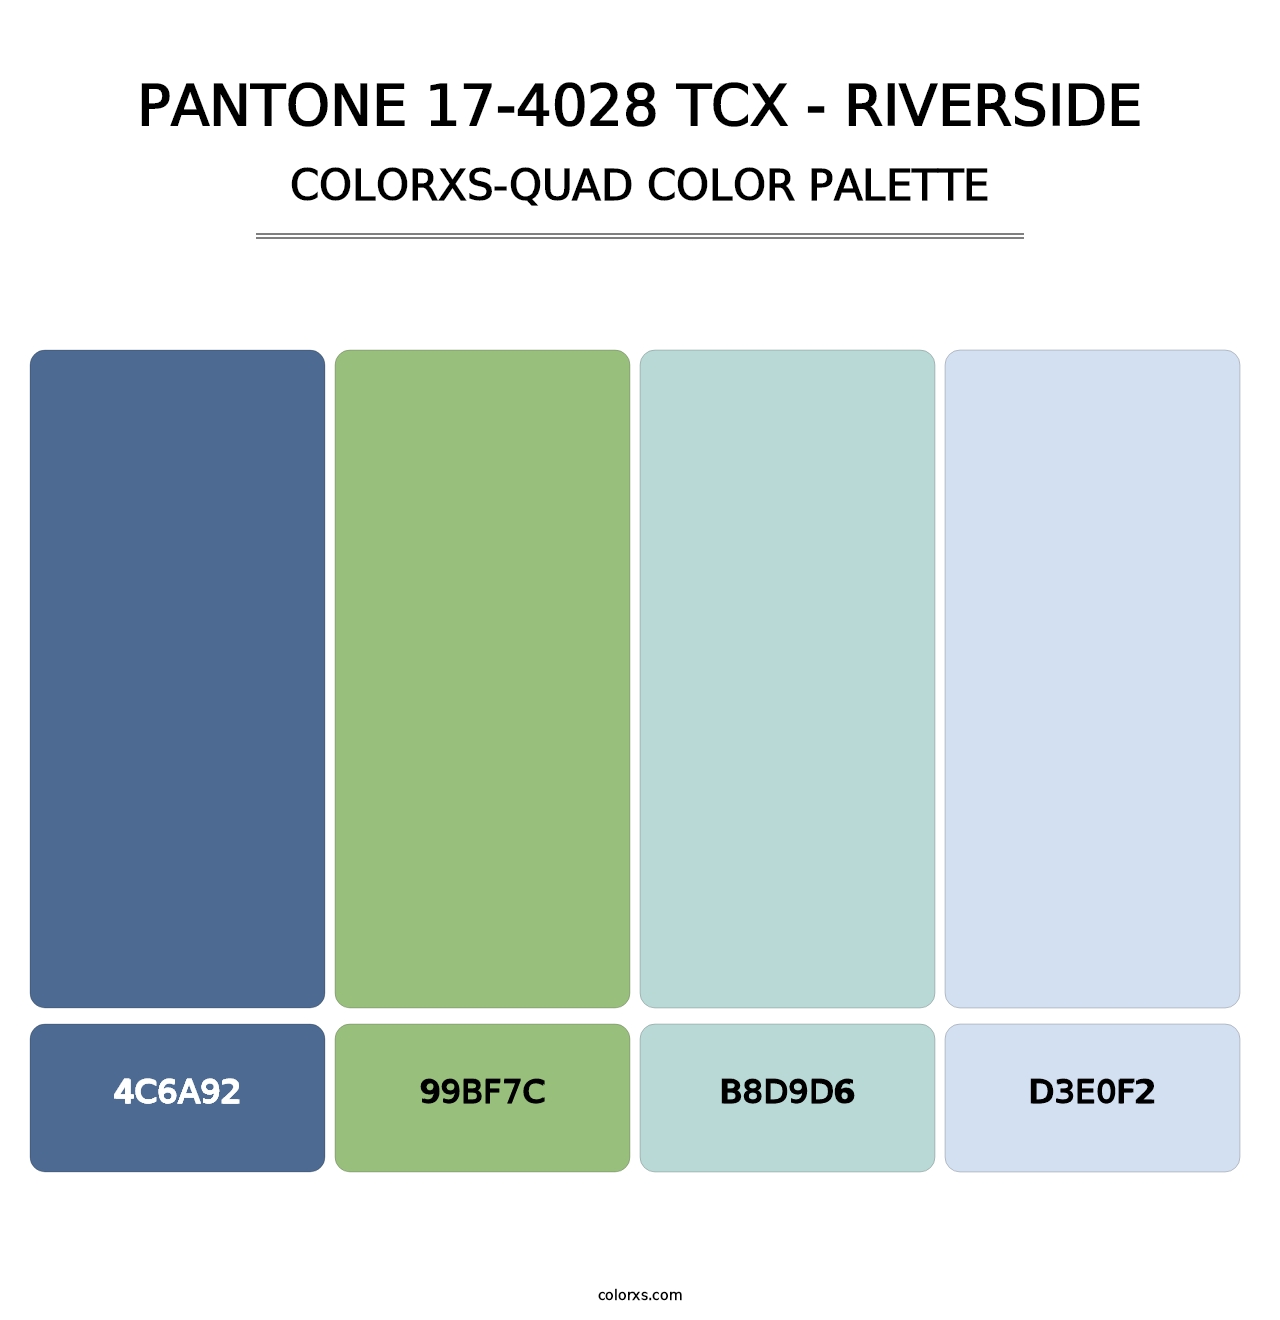 PANTONE 17-4028 TCX - Riverside - Colorxs Quad Palette